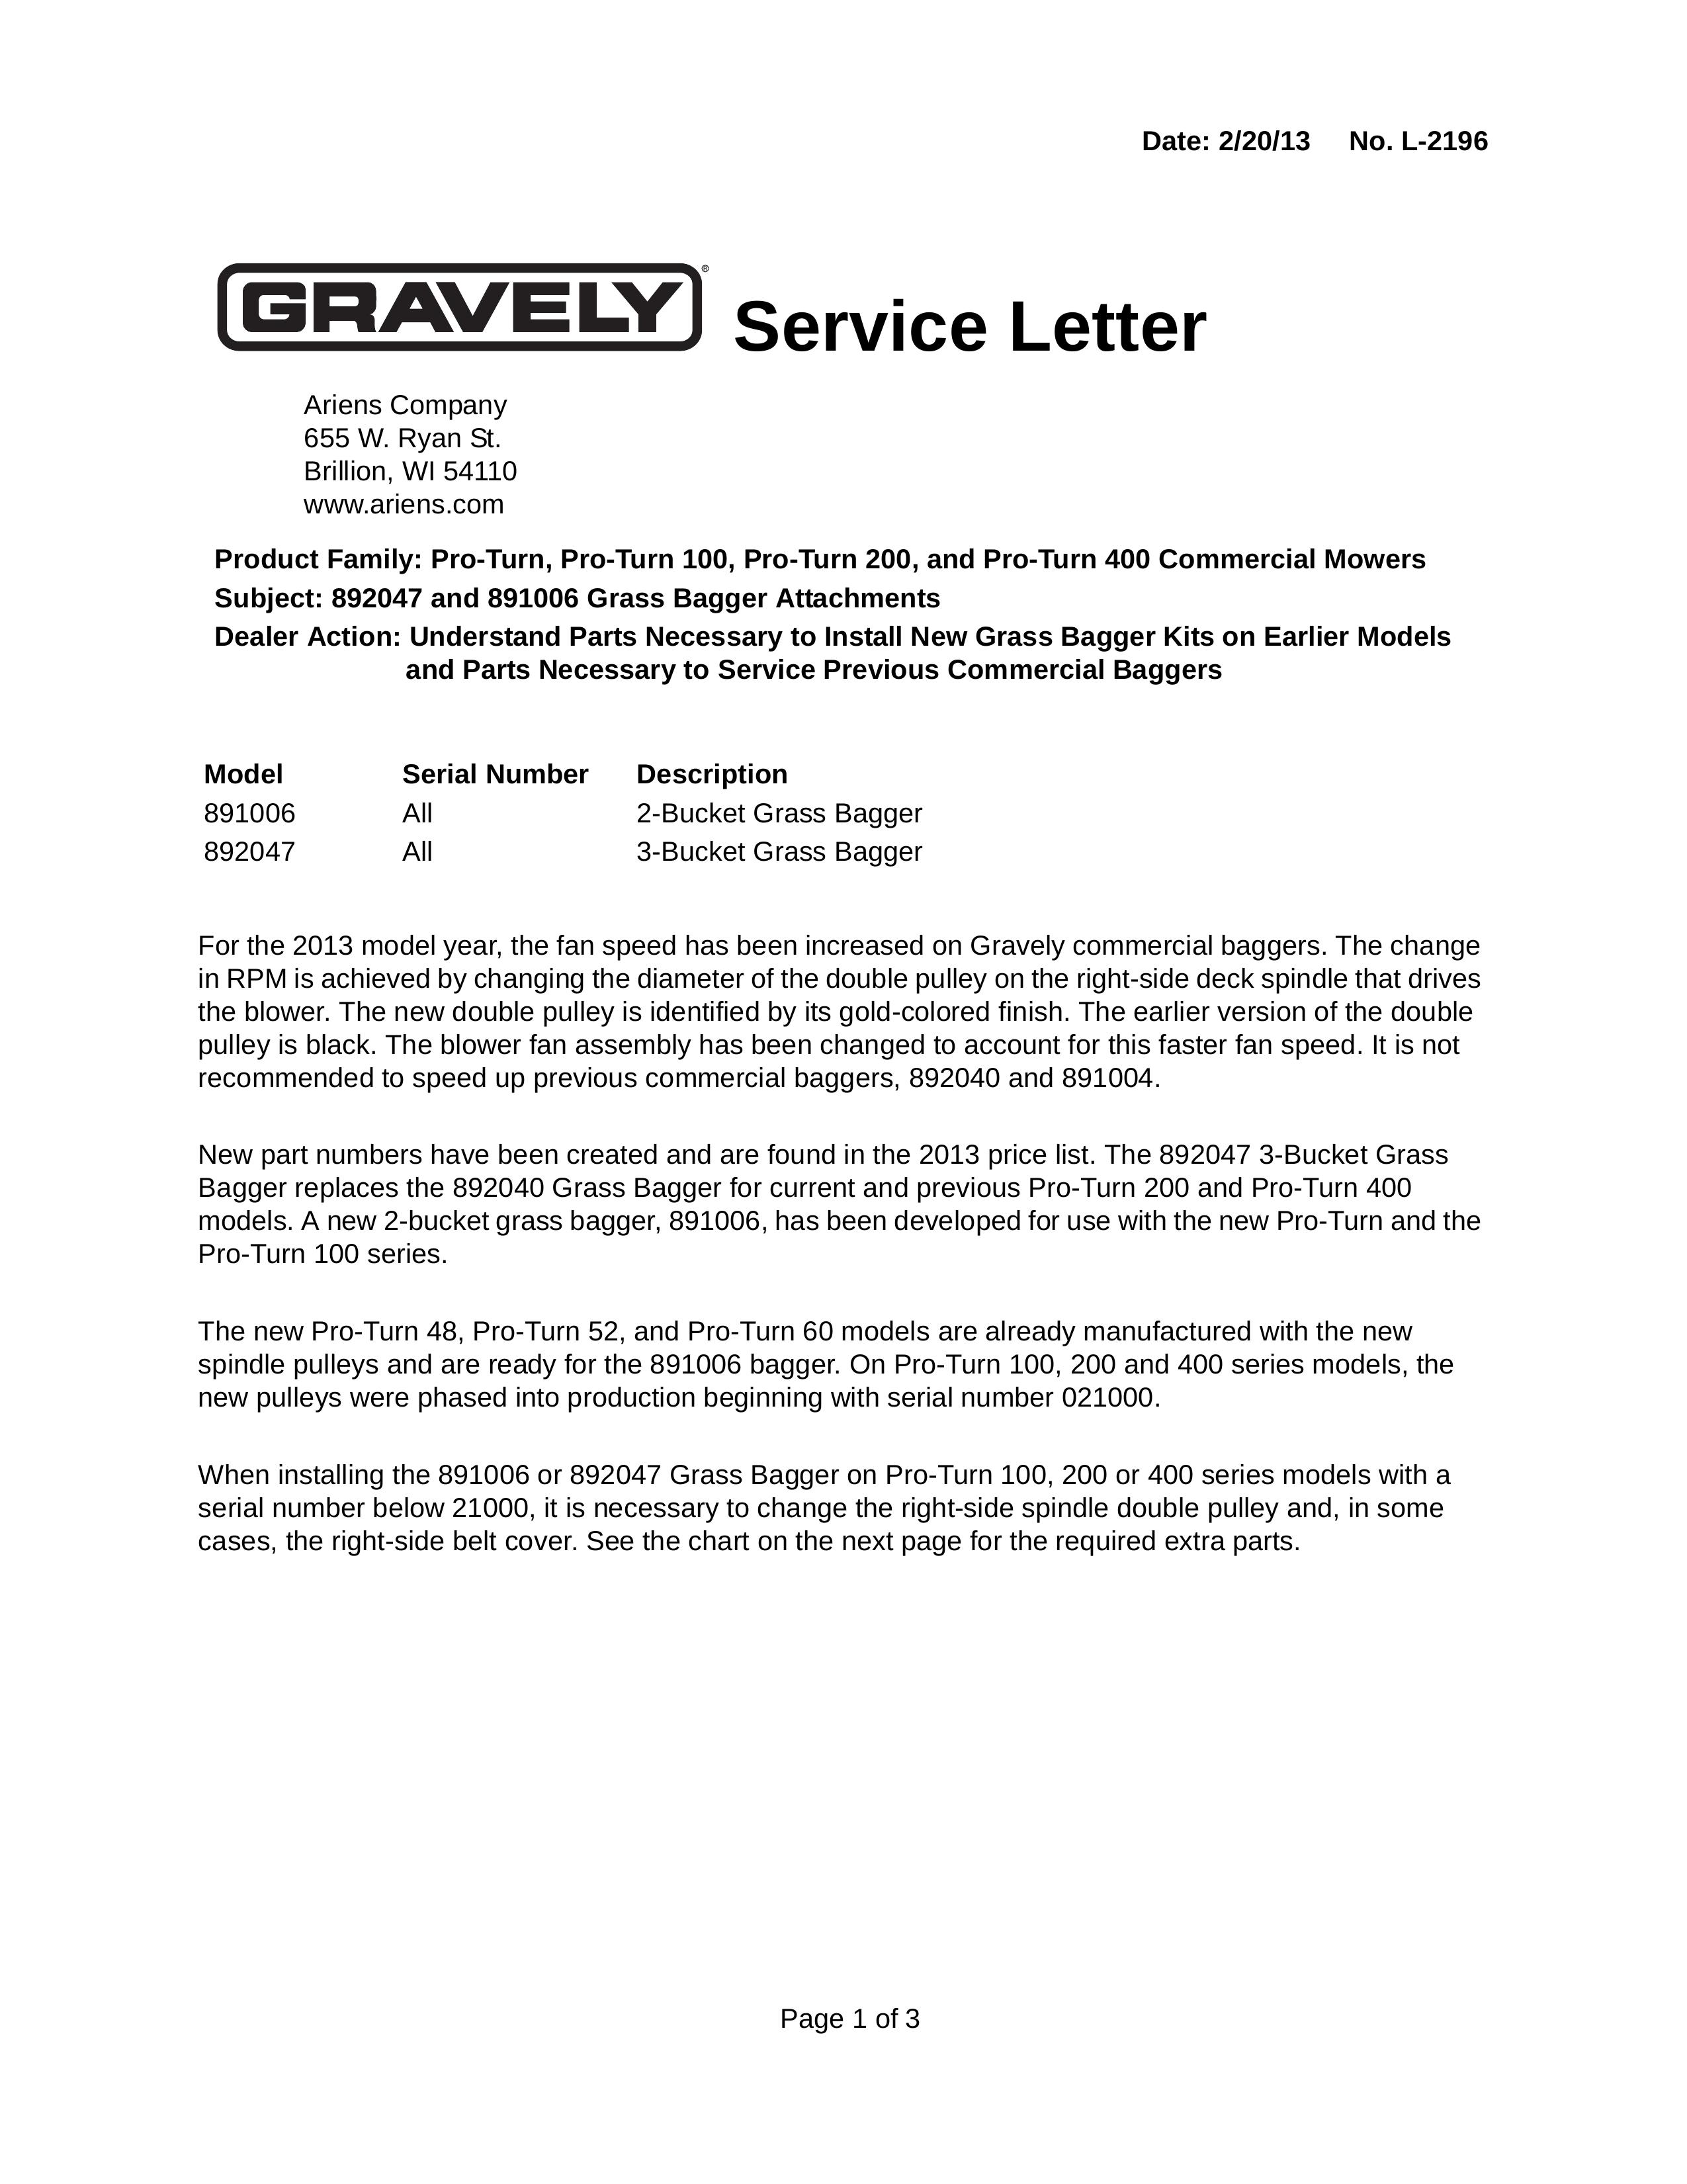 Ariens 892047 Lawn Mower User Manual